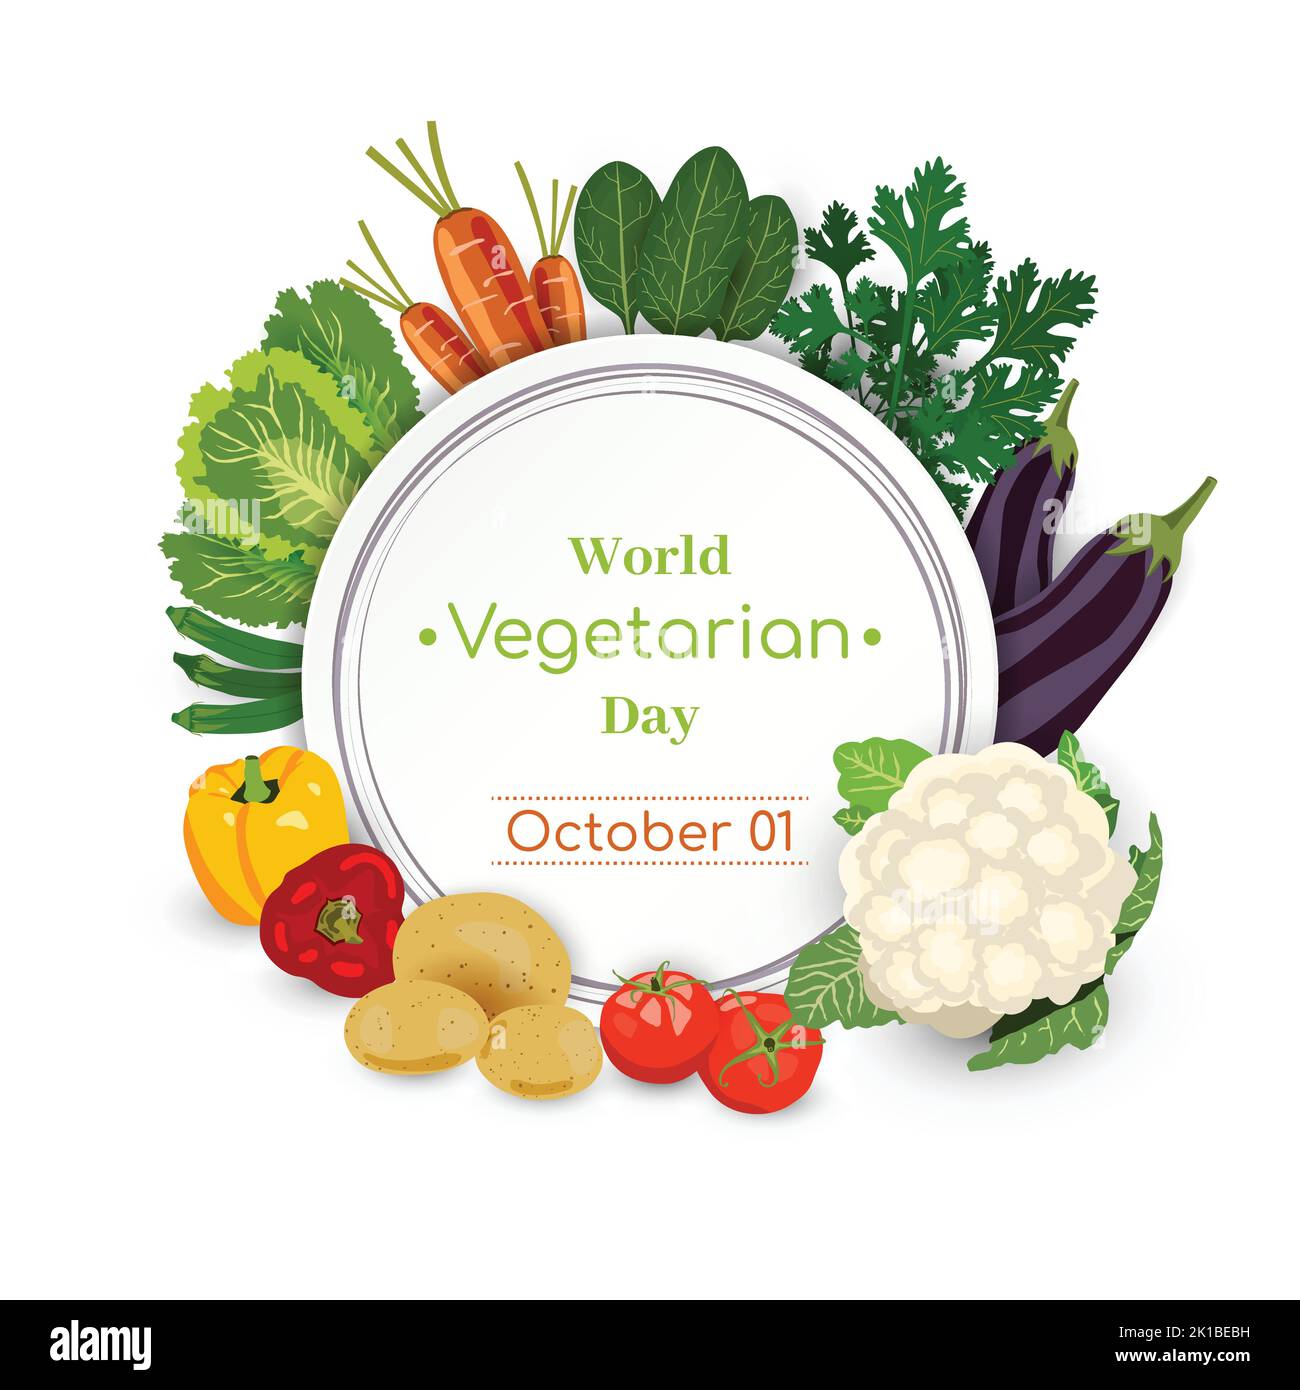 World Vegetarian Day Ottobre 01 Poster Vector Illustration. Biologico e verde Dieta alimentare sfondo design. Prodotto naturale sano Nutrizione Vegan Illustrazione Vettoriale